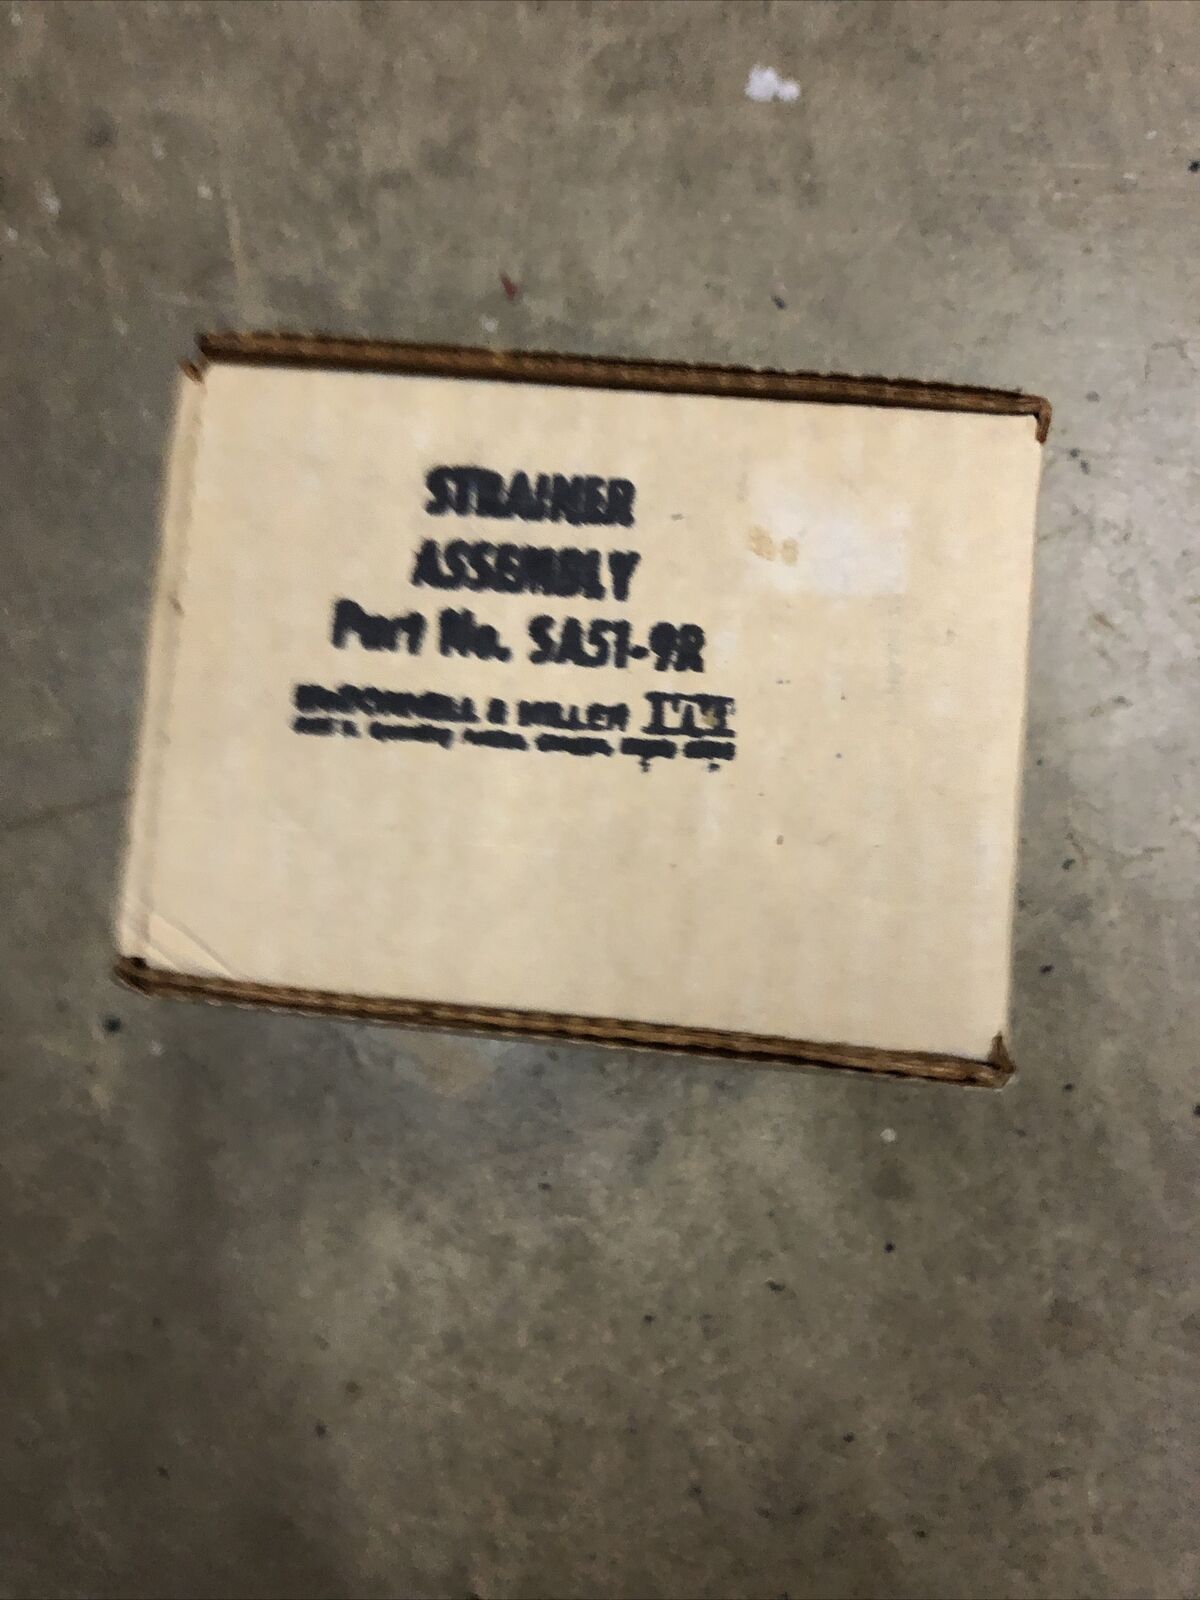 ITT, McDonnell & Miller, SA51-9R, 342300, Strainer Assembly